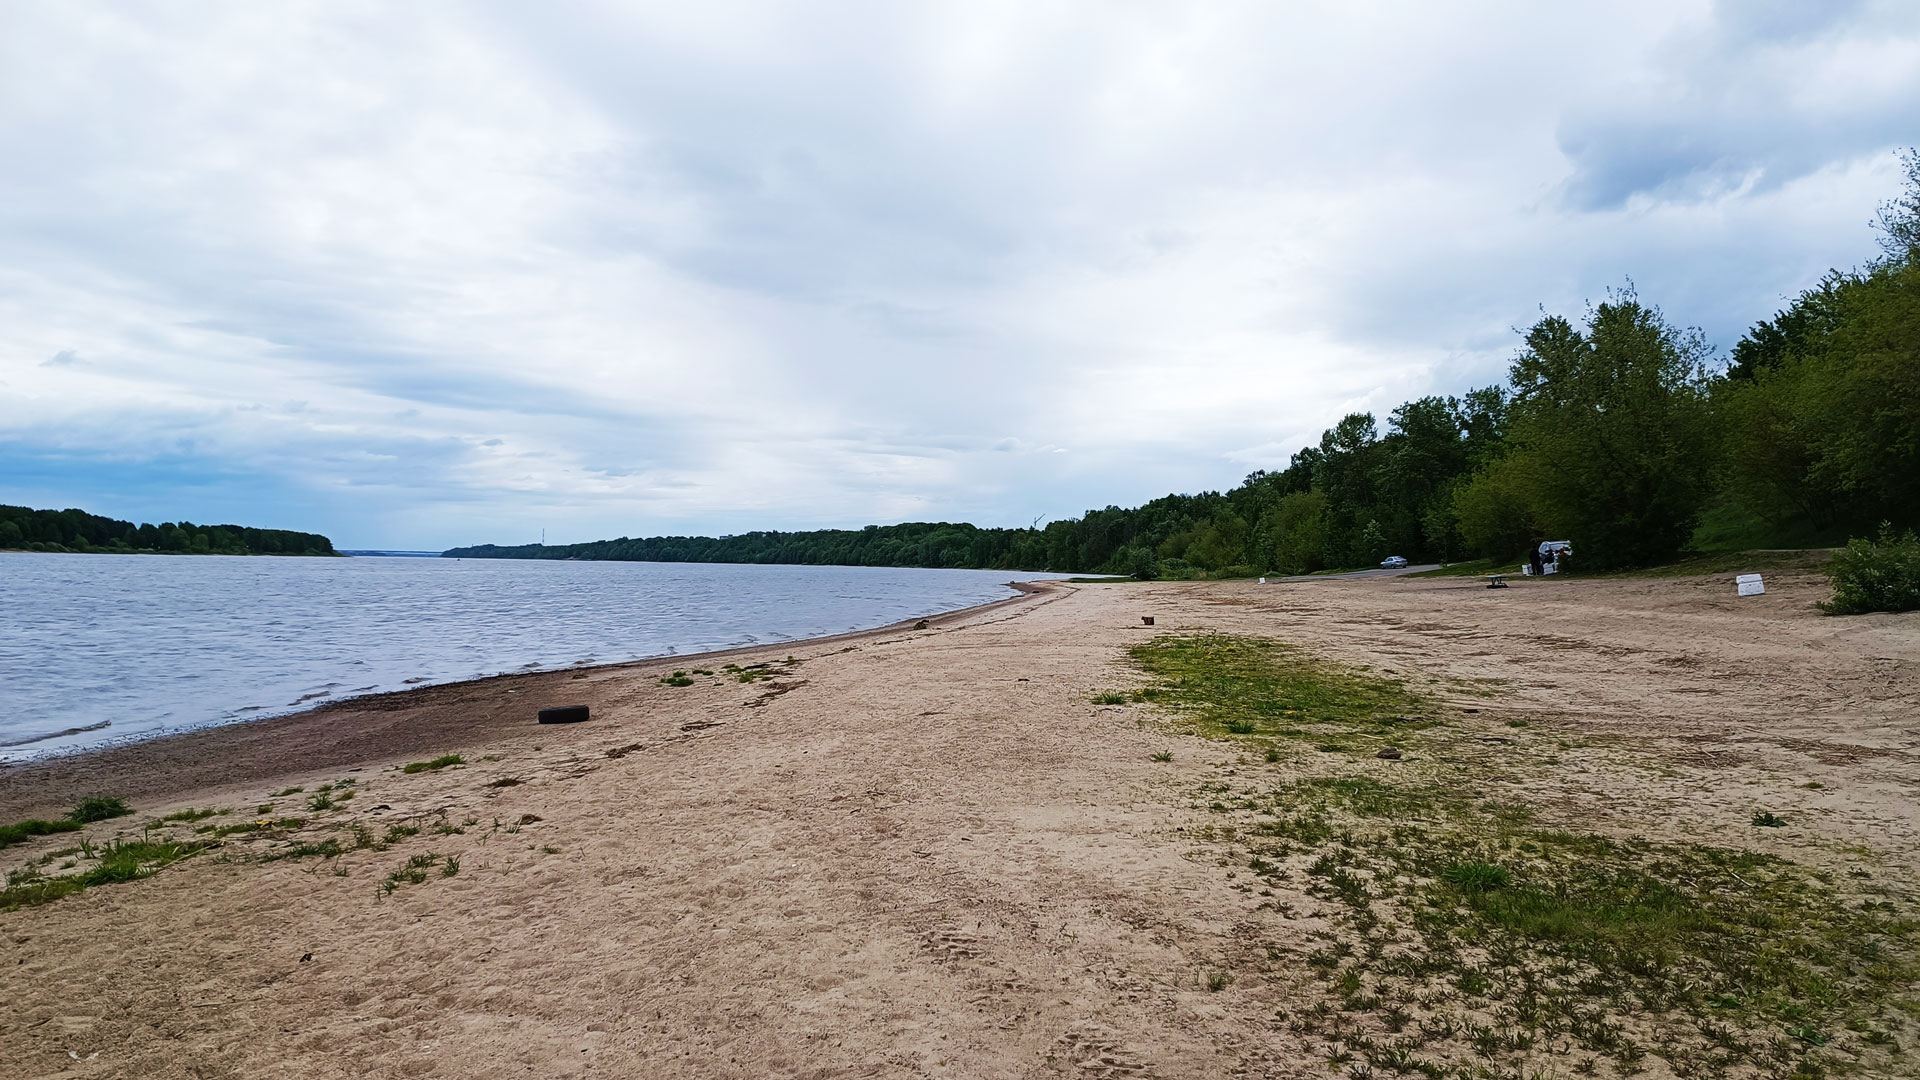 Норский пляж Ярославль: панорамный вид.